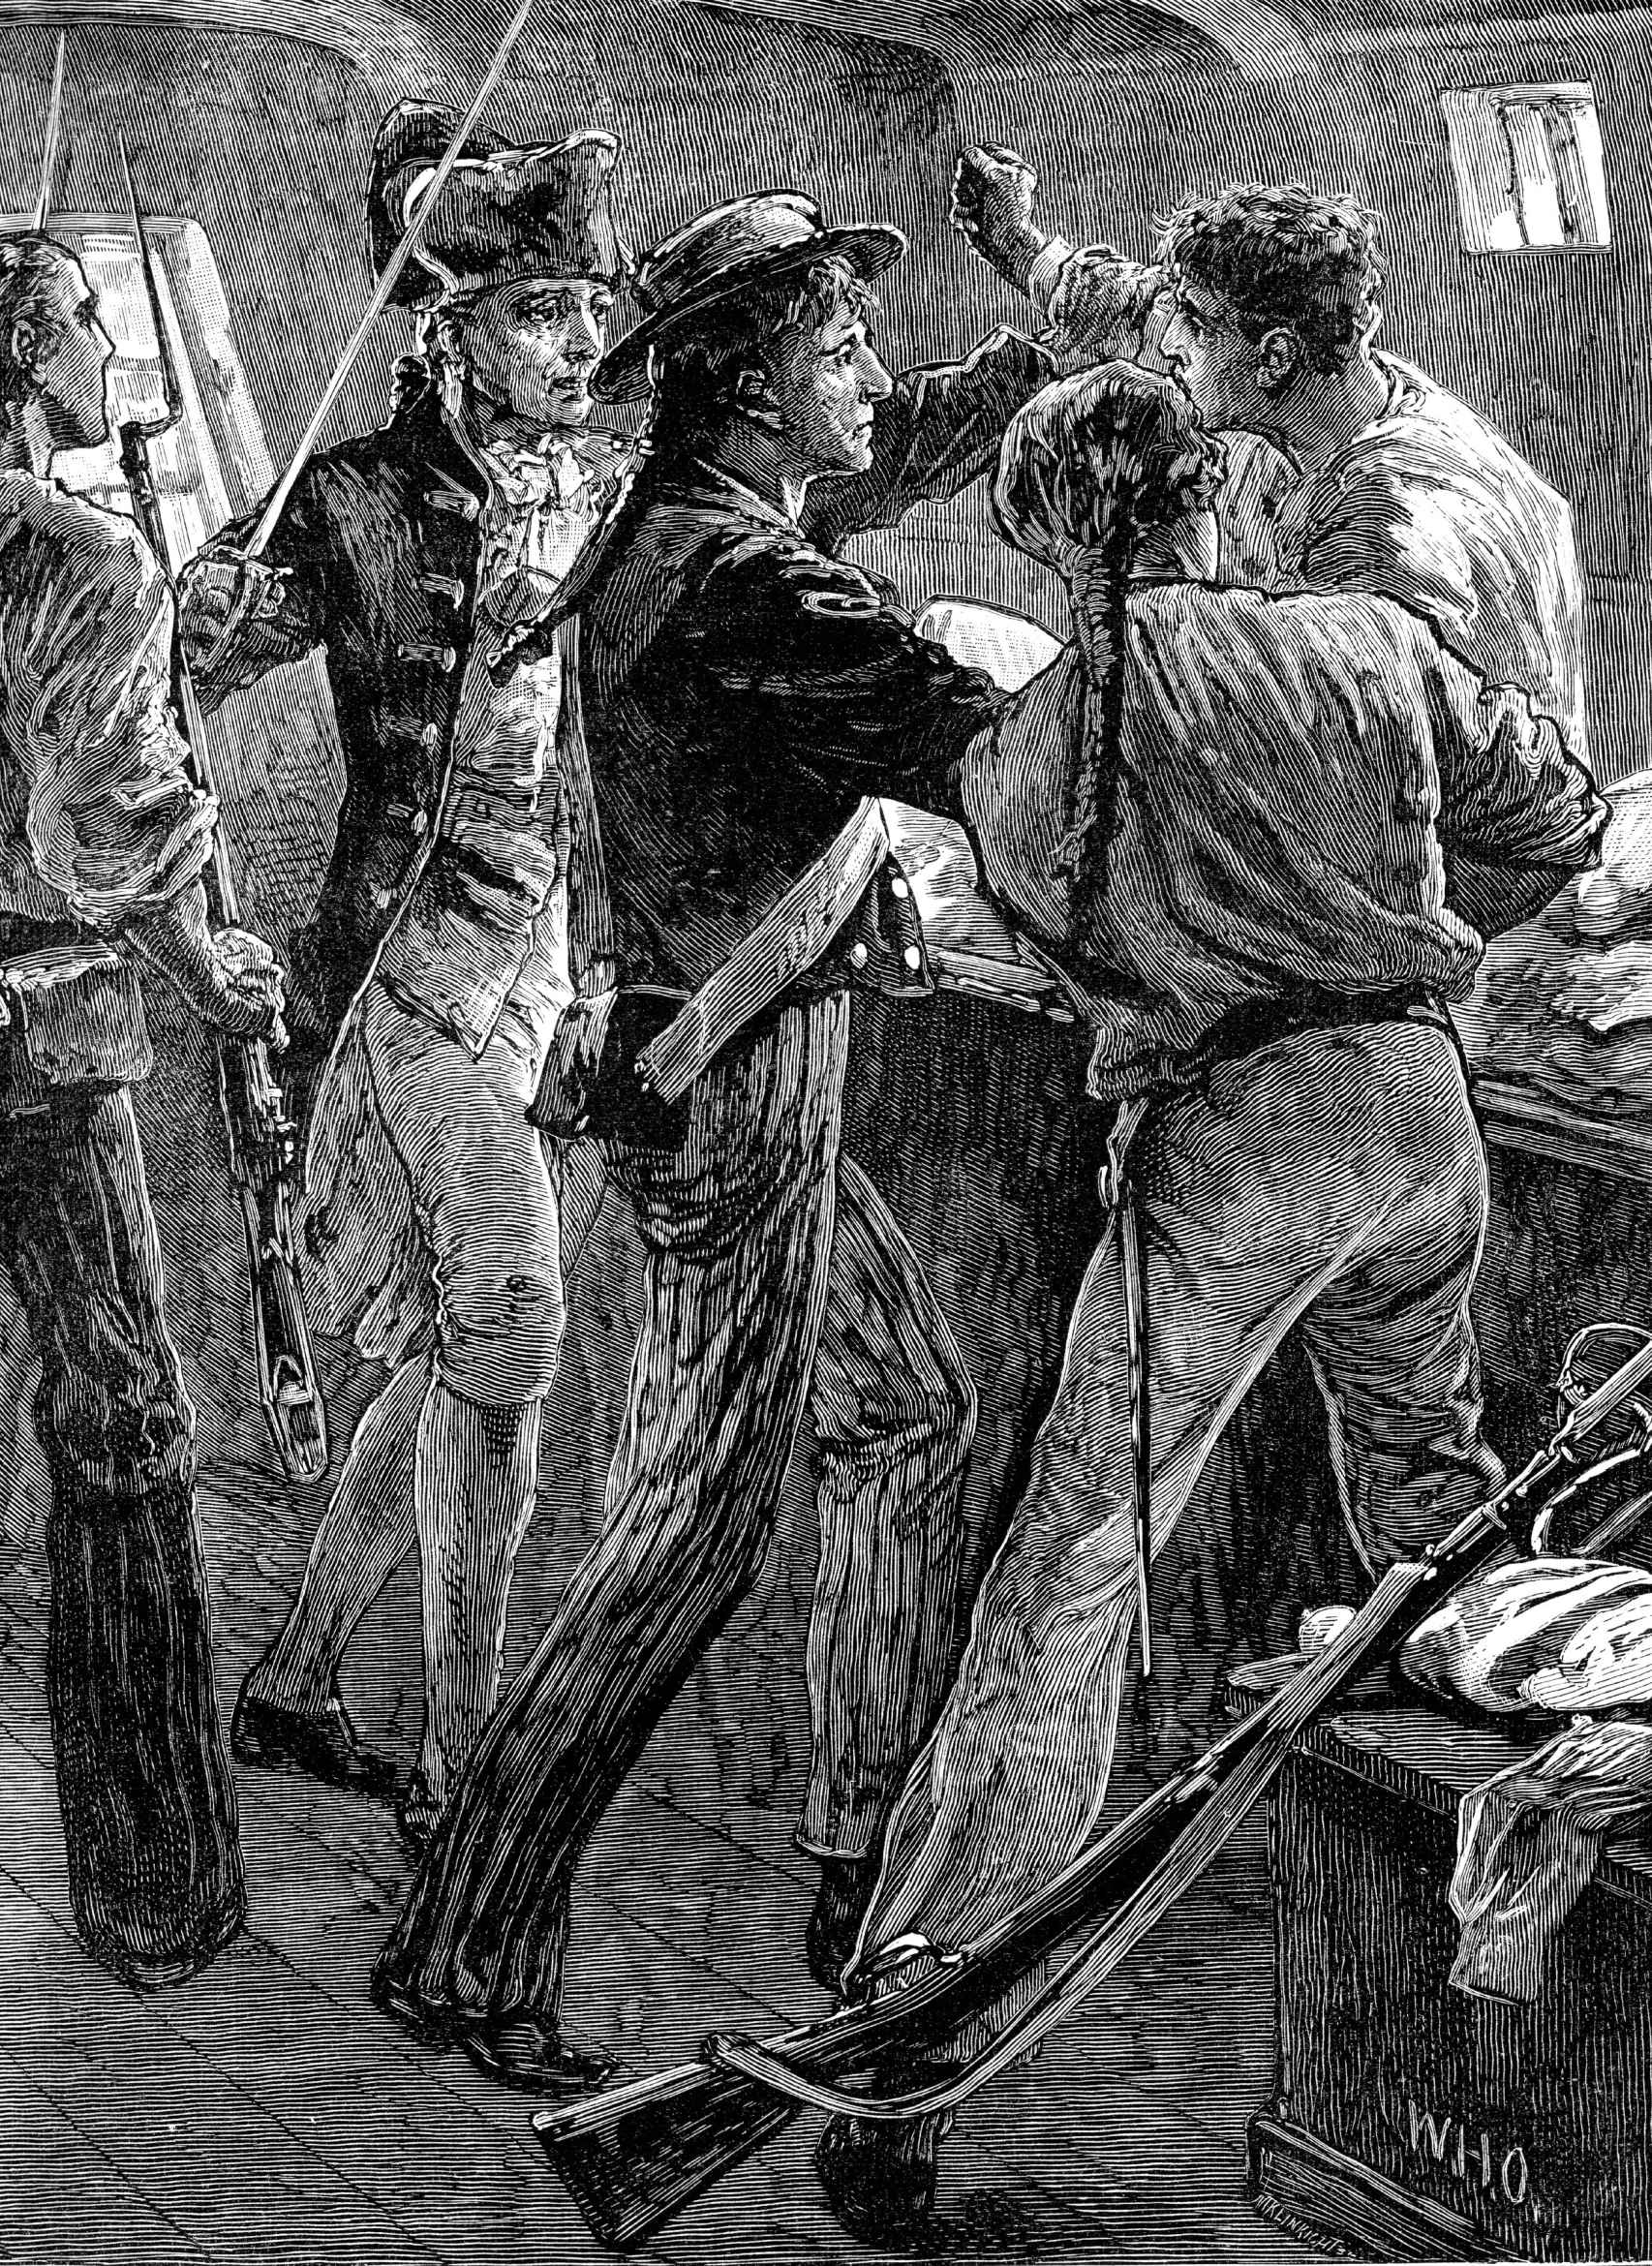 Ilustración que recrea la detención del capitán Bligh por los sublevados de la Bounty